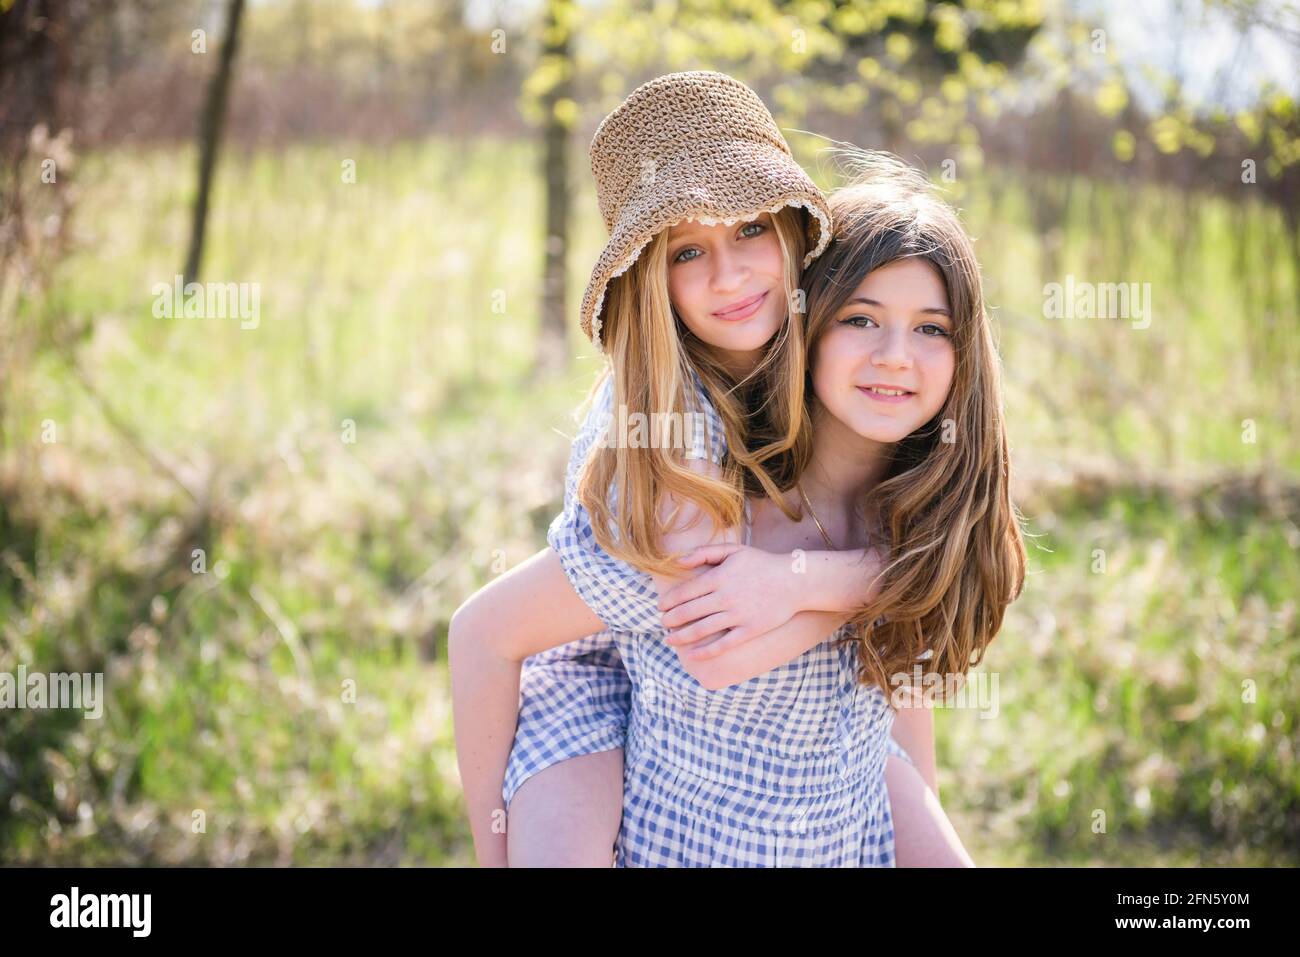 Deux jeunes filles adolescentes heureuses dans des sundresses à l'extérieur. Banque D'Images